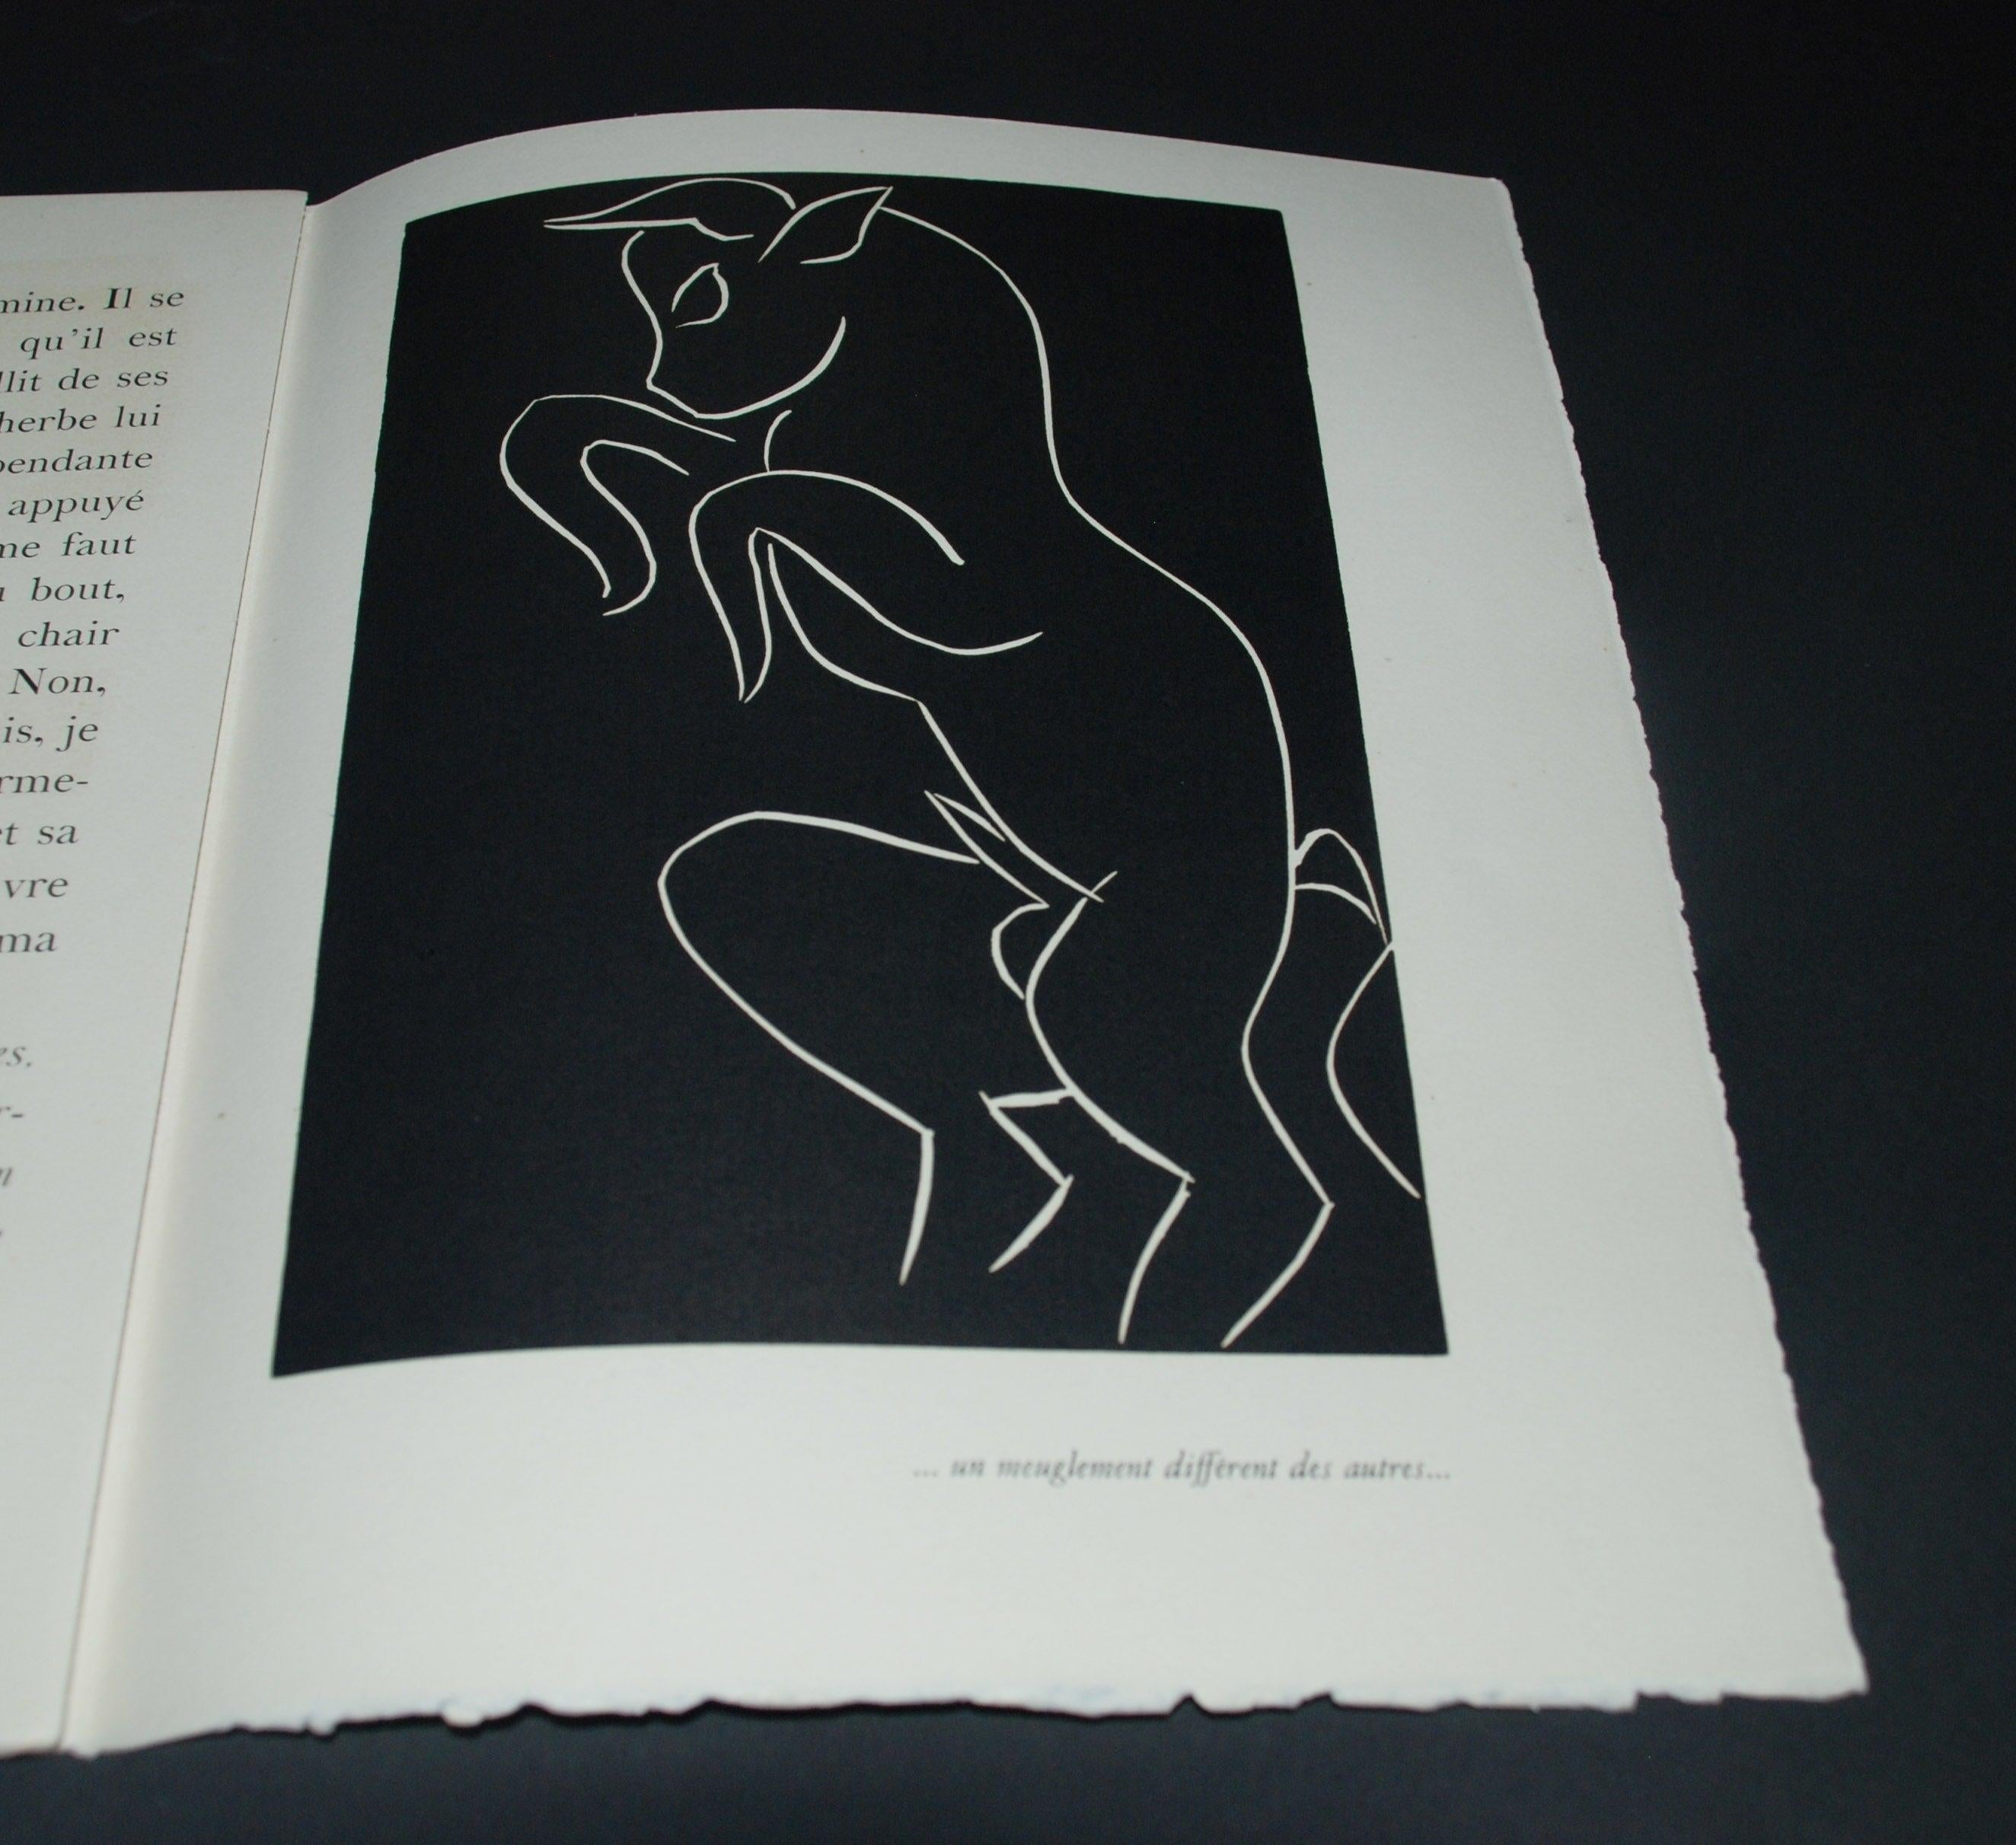 Assiette 15 : Un Meuglement Different des Autres (un maïs différent des autres) - Print de Henri Matisse